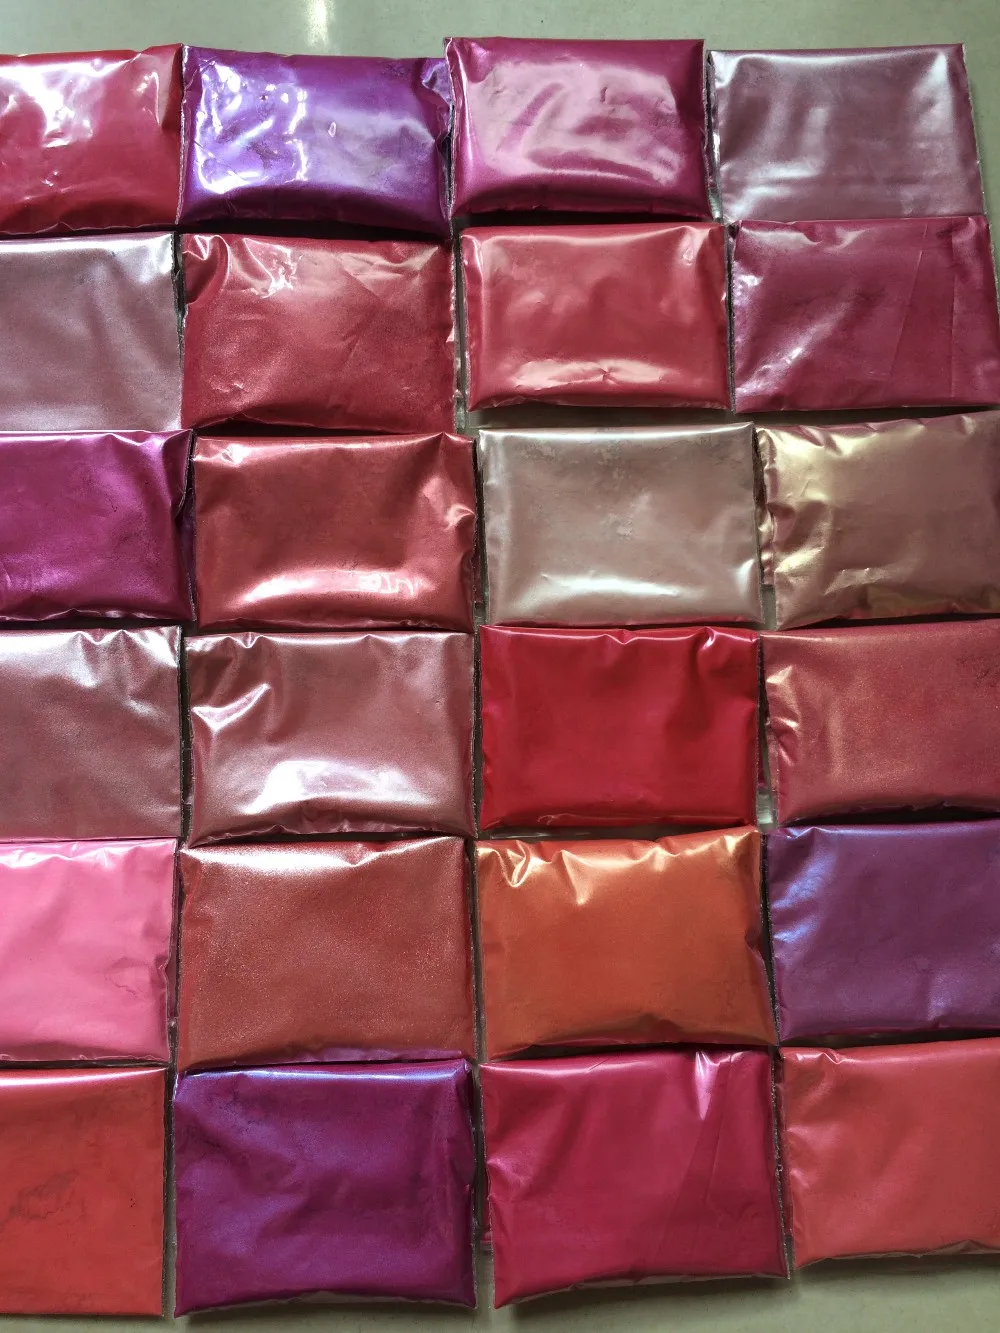 Космический 24 розового цвета слюдяной порошковый пигмент набор для макияжа Тени для век дизайн ногтей мыло